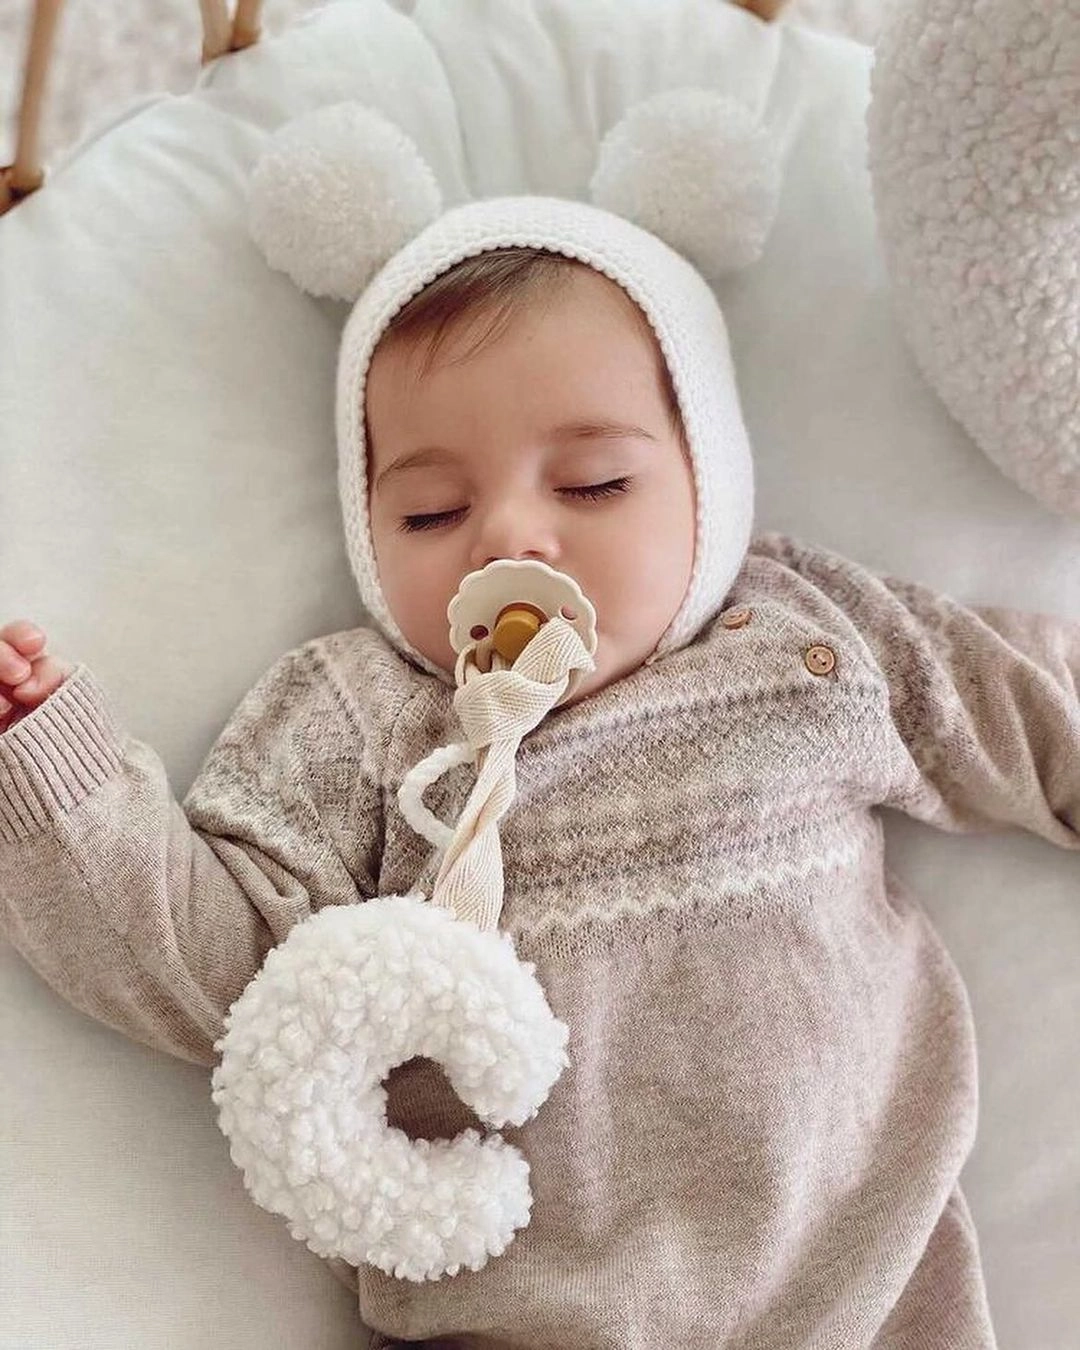 lancic za culu na vezivanje u obliku polumeseca bele boje od teddy materijala zavezana za cuclu u ustima bebe koja spava